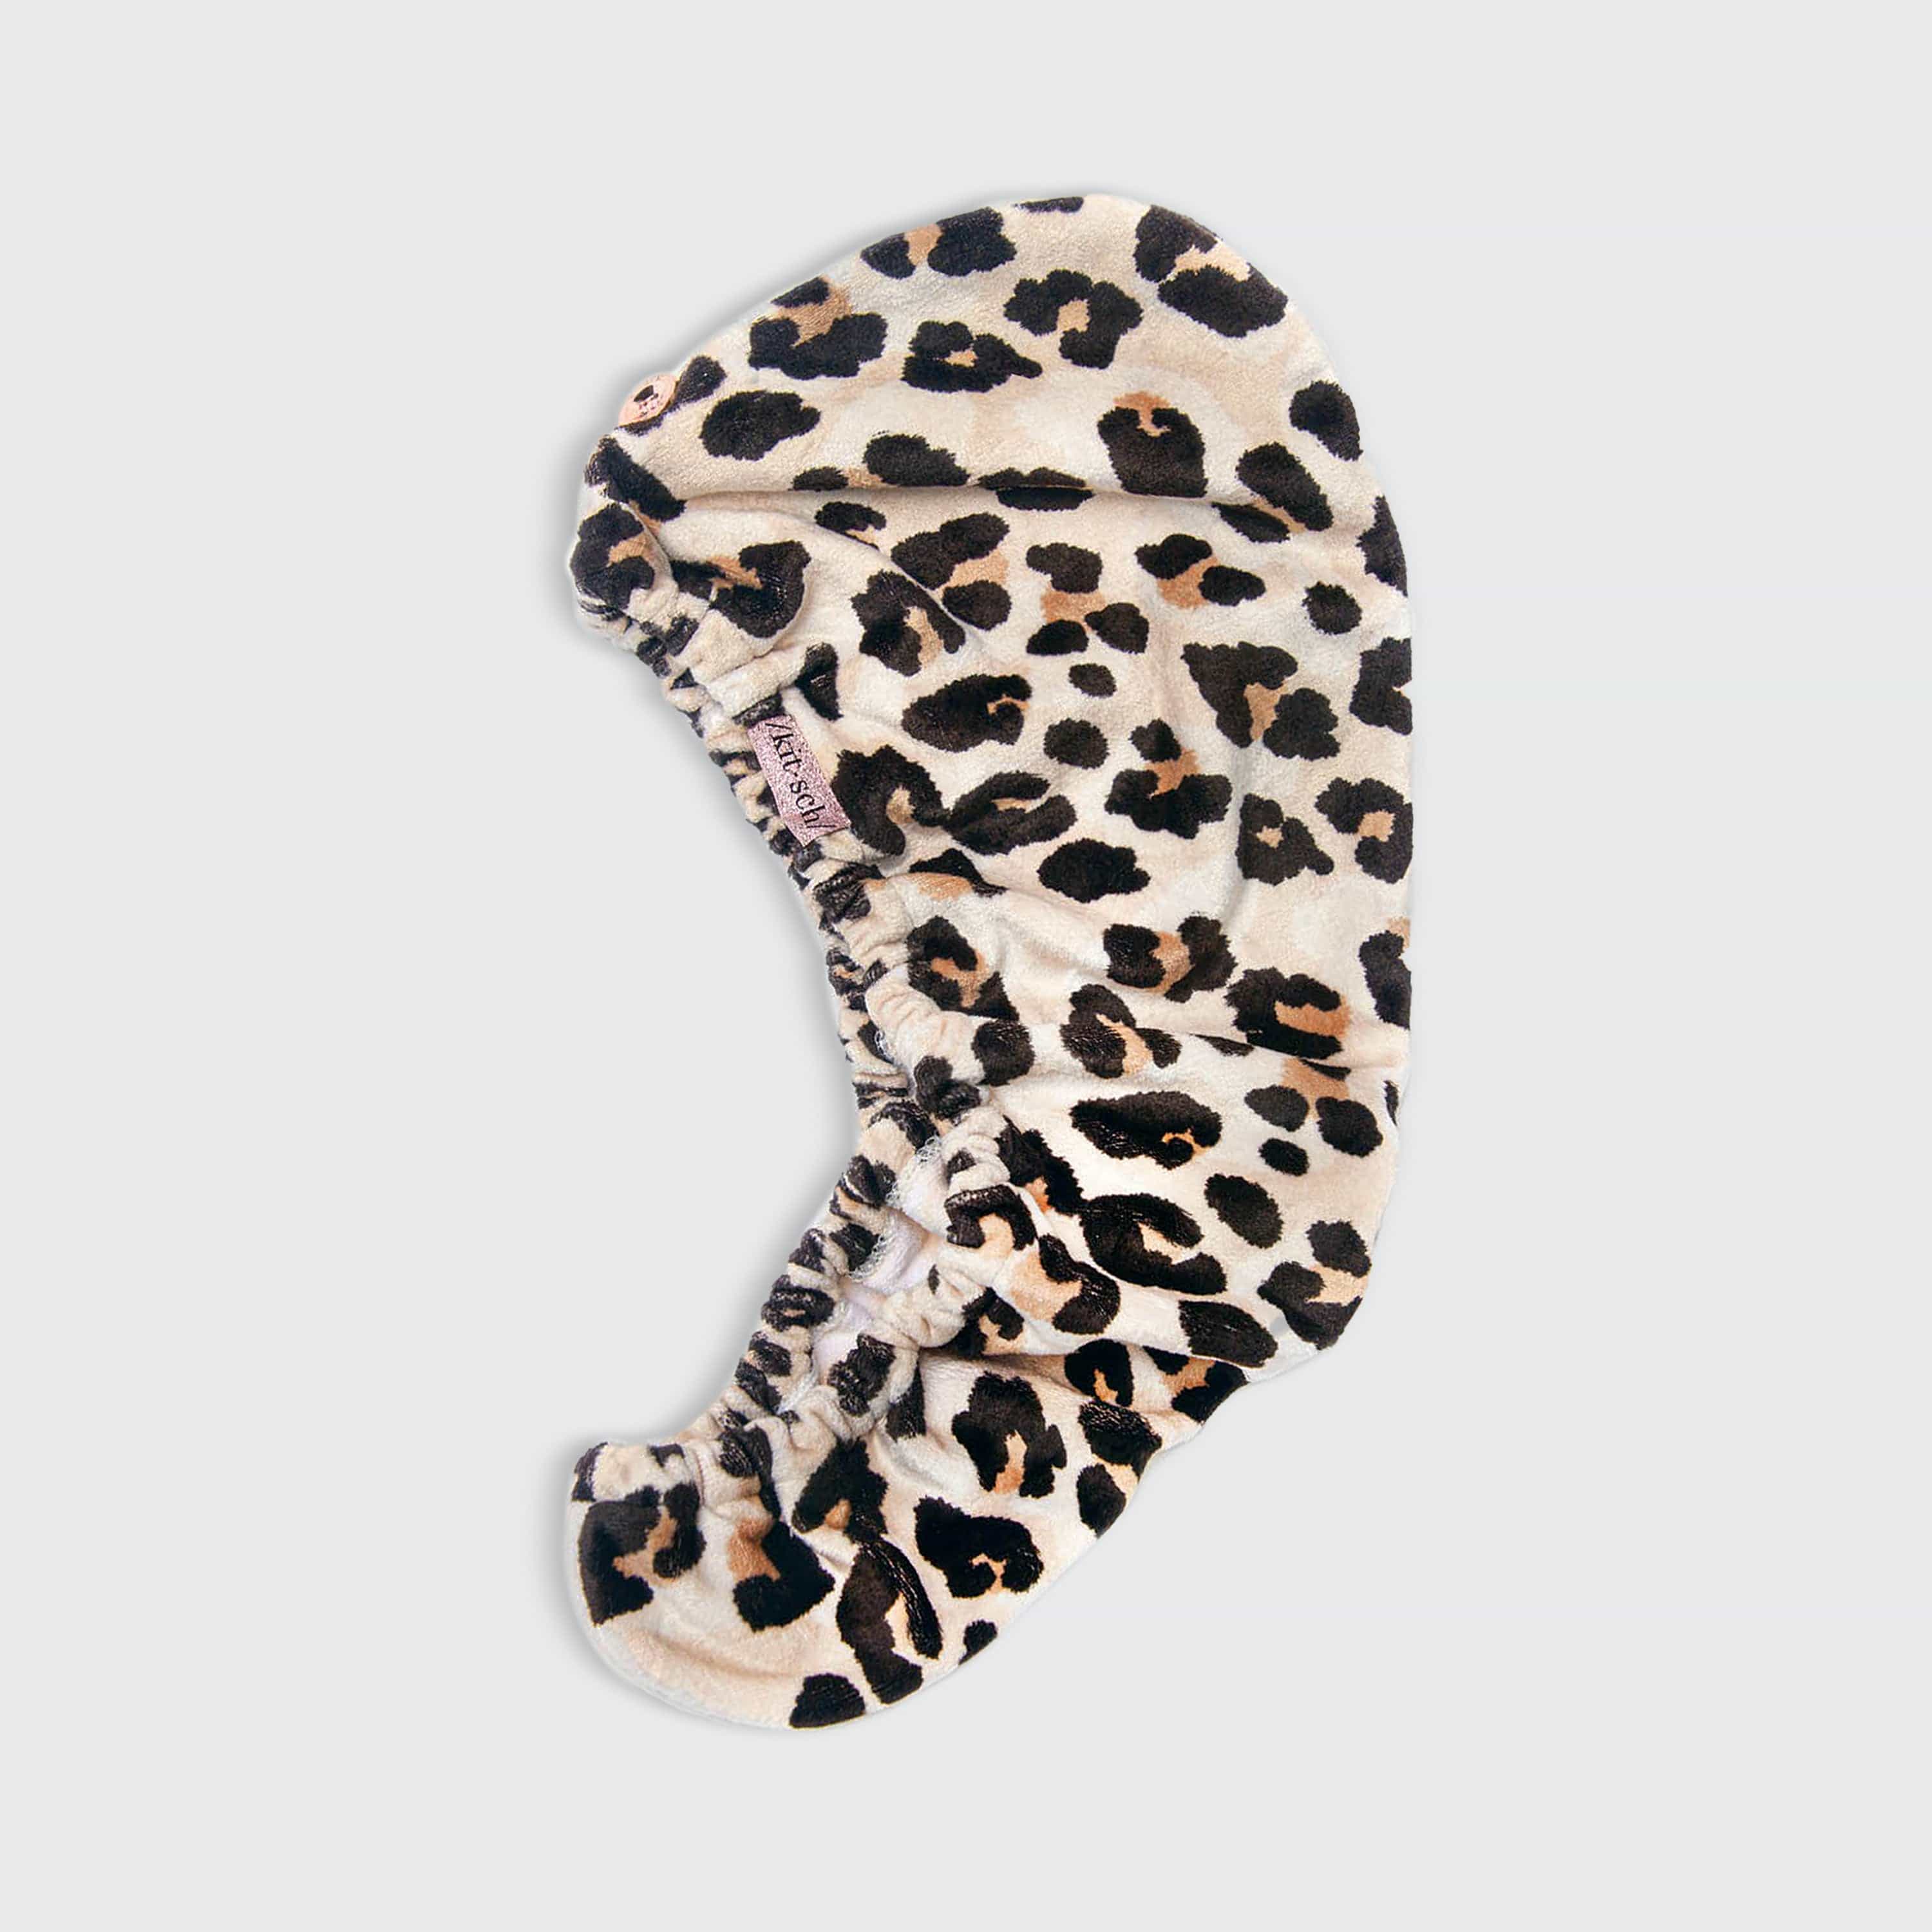 Microfiber Hair Towel in Leopard